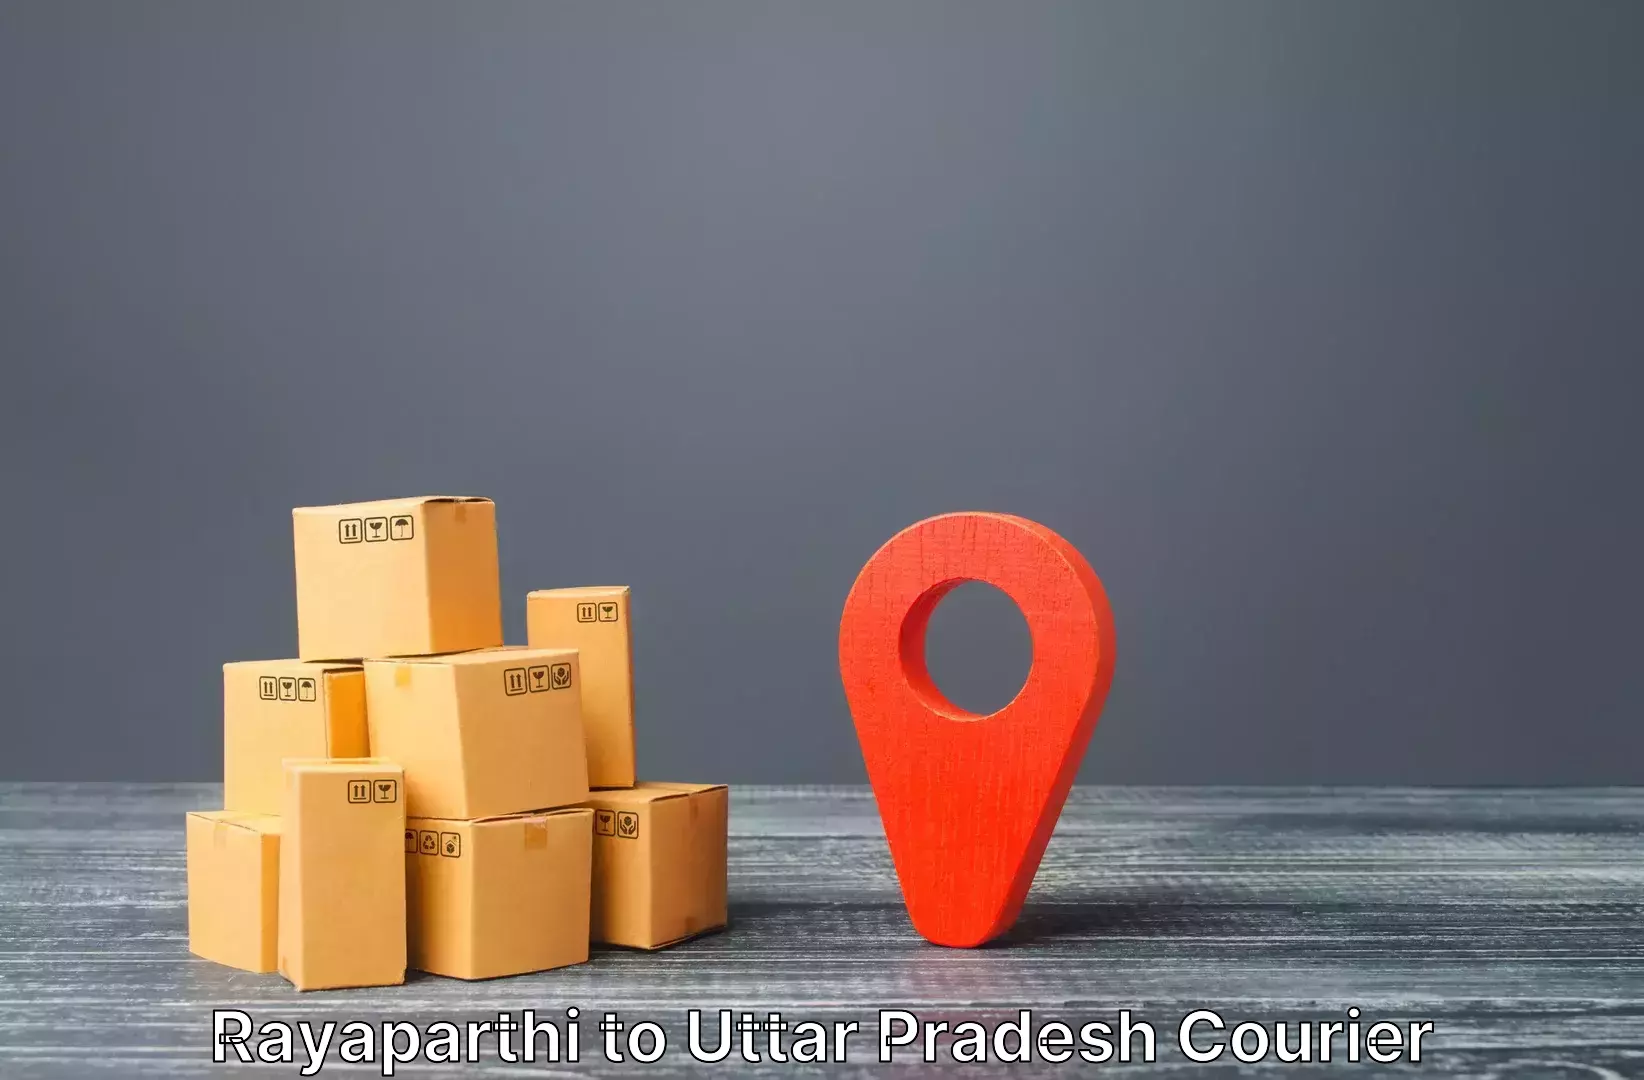 Luggage delivery estimate Rayaparthi to Baksha